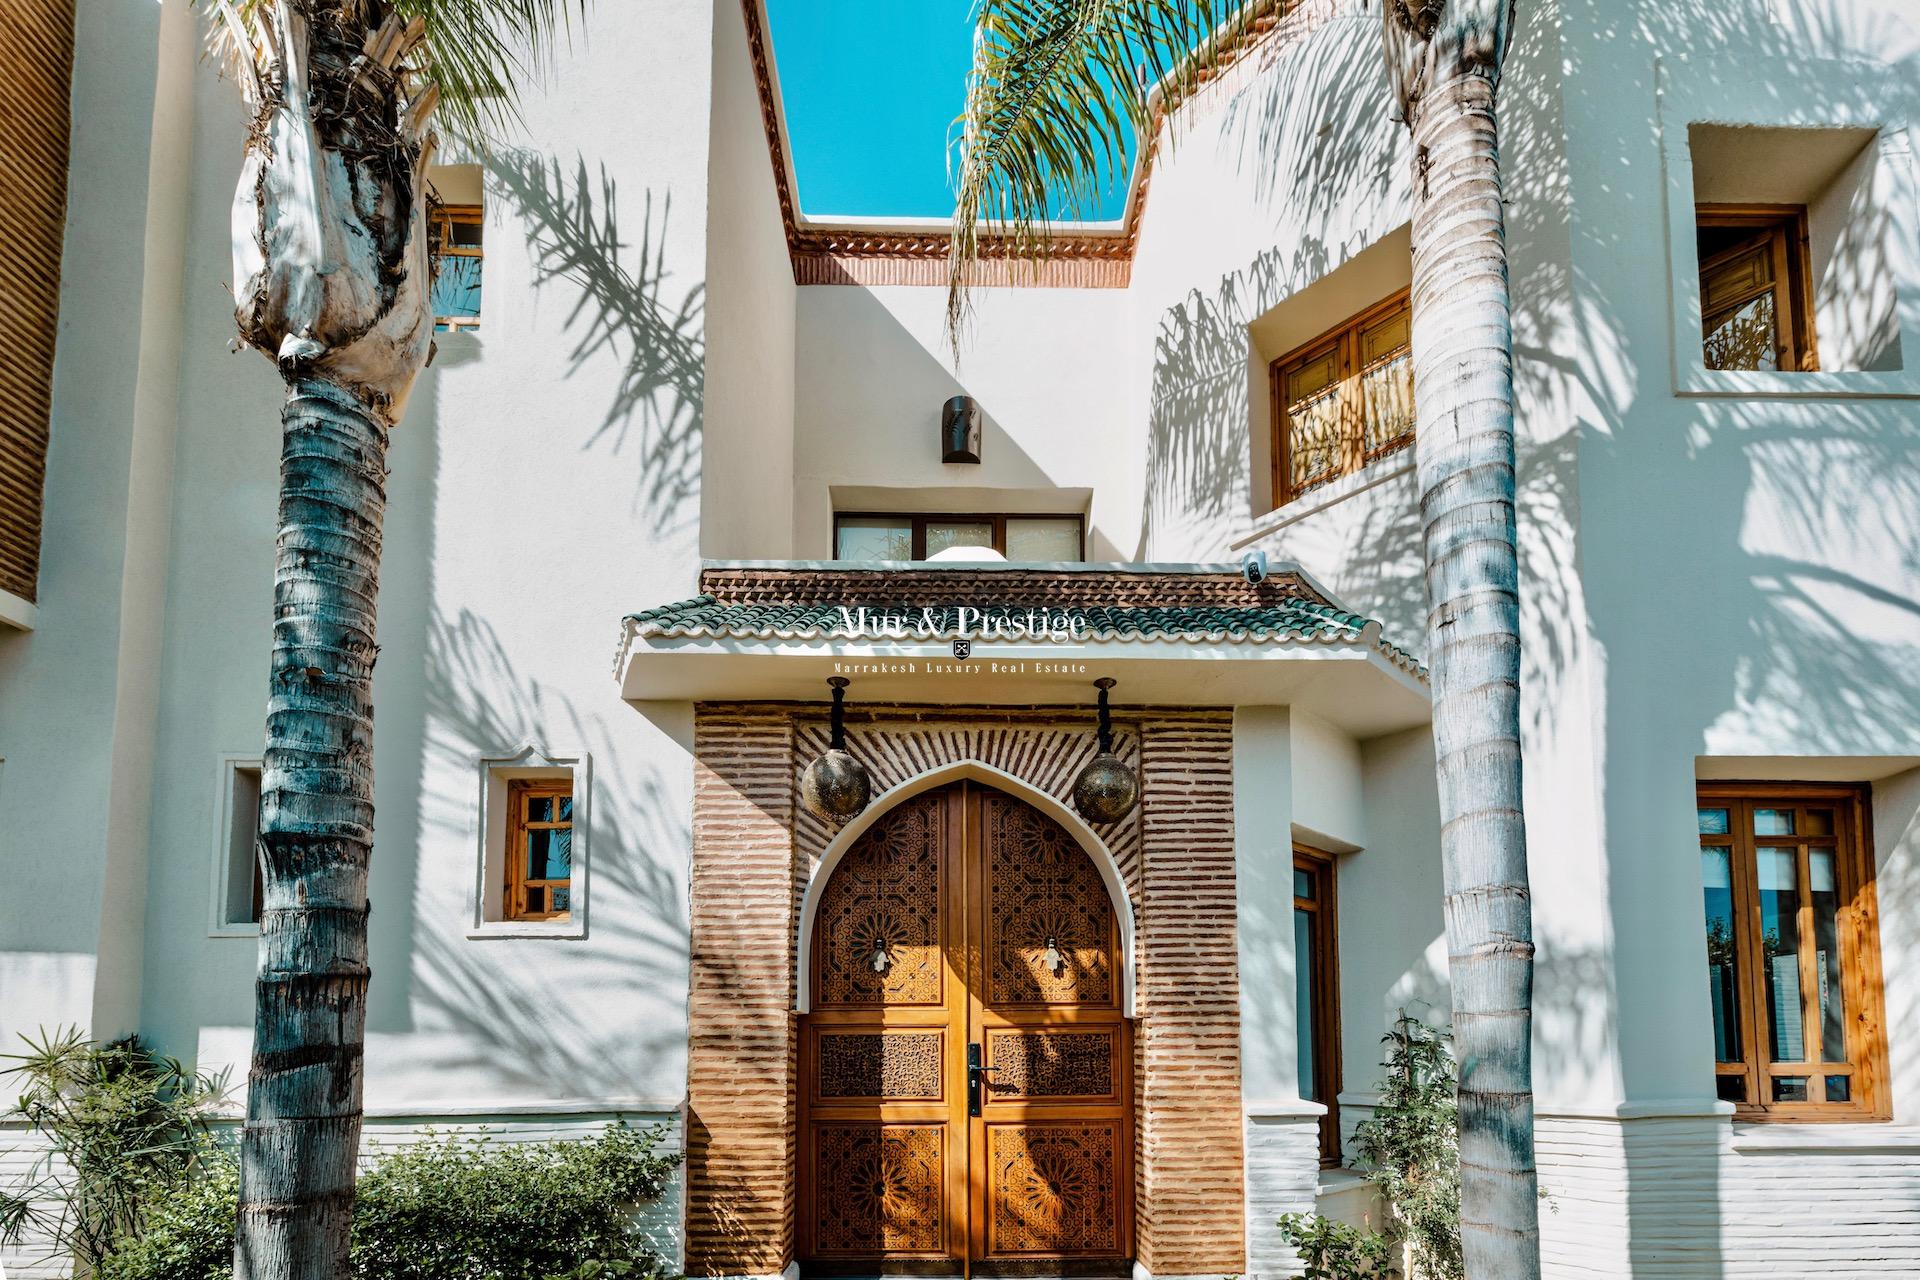 Vente maison de charme sur golf à Marrakech  - copie